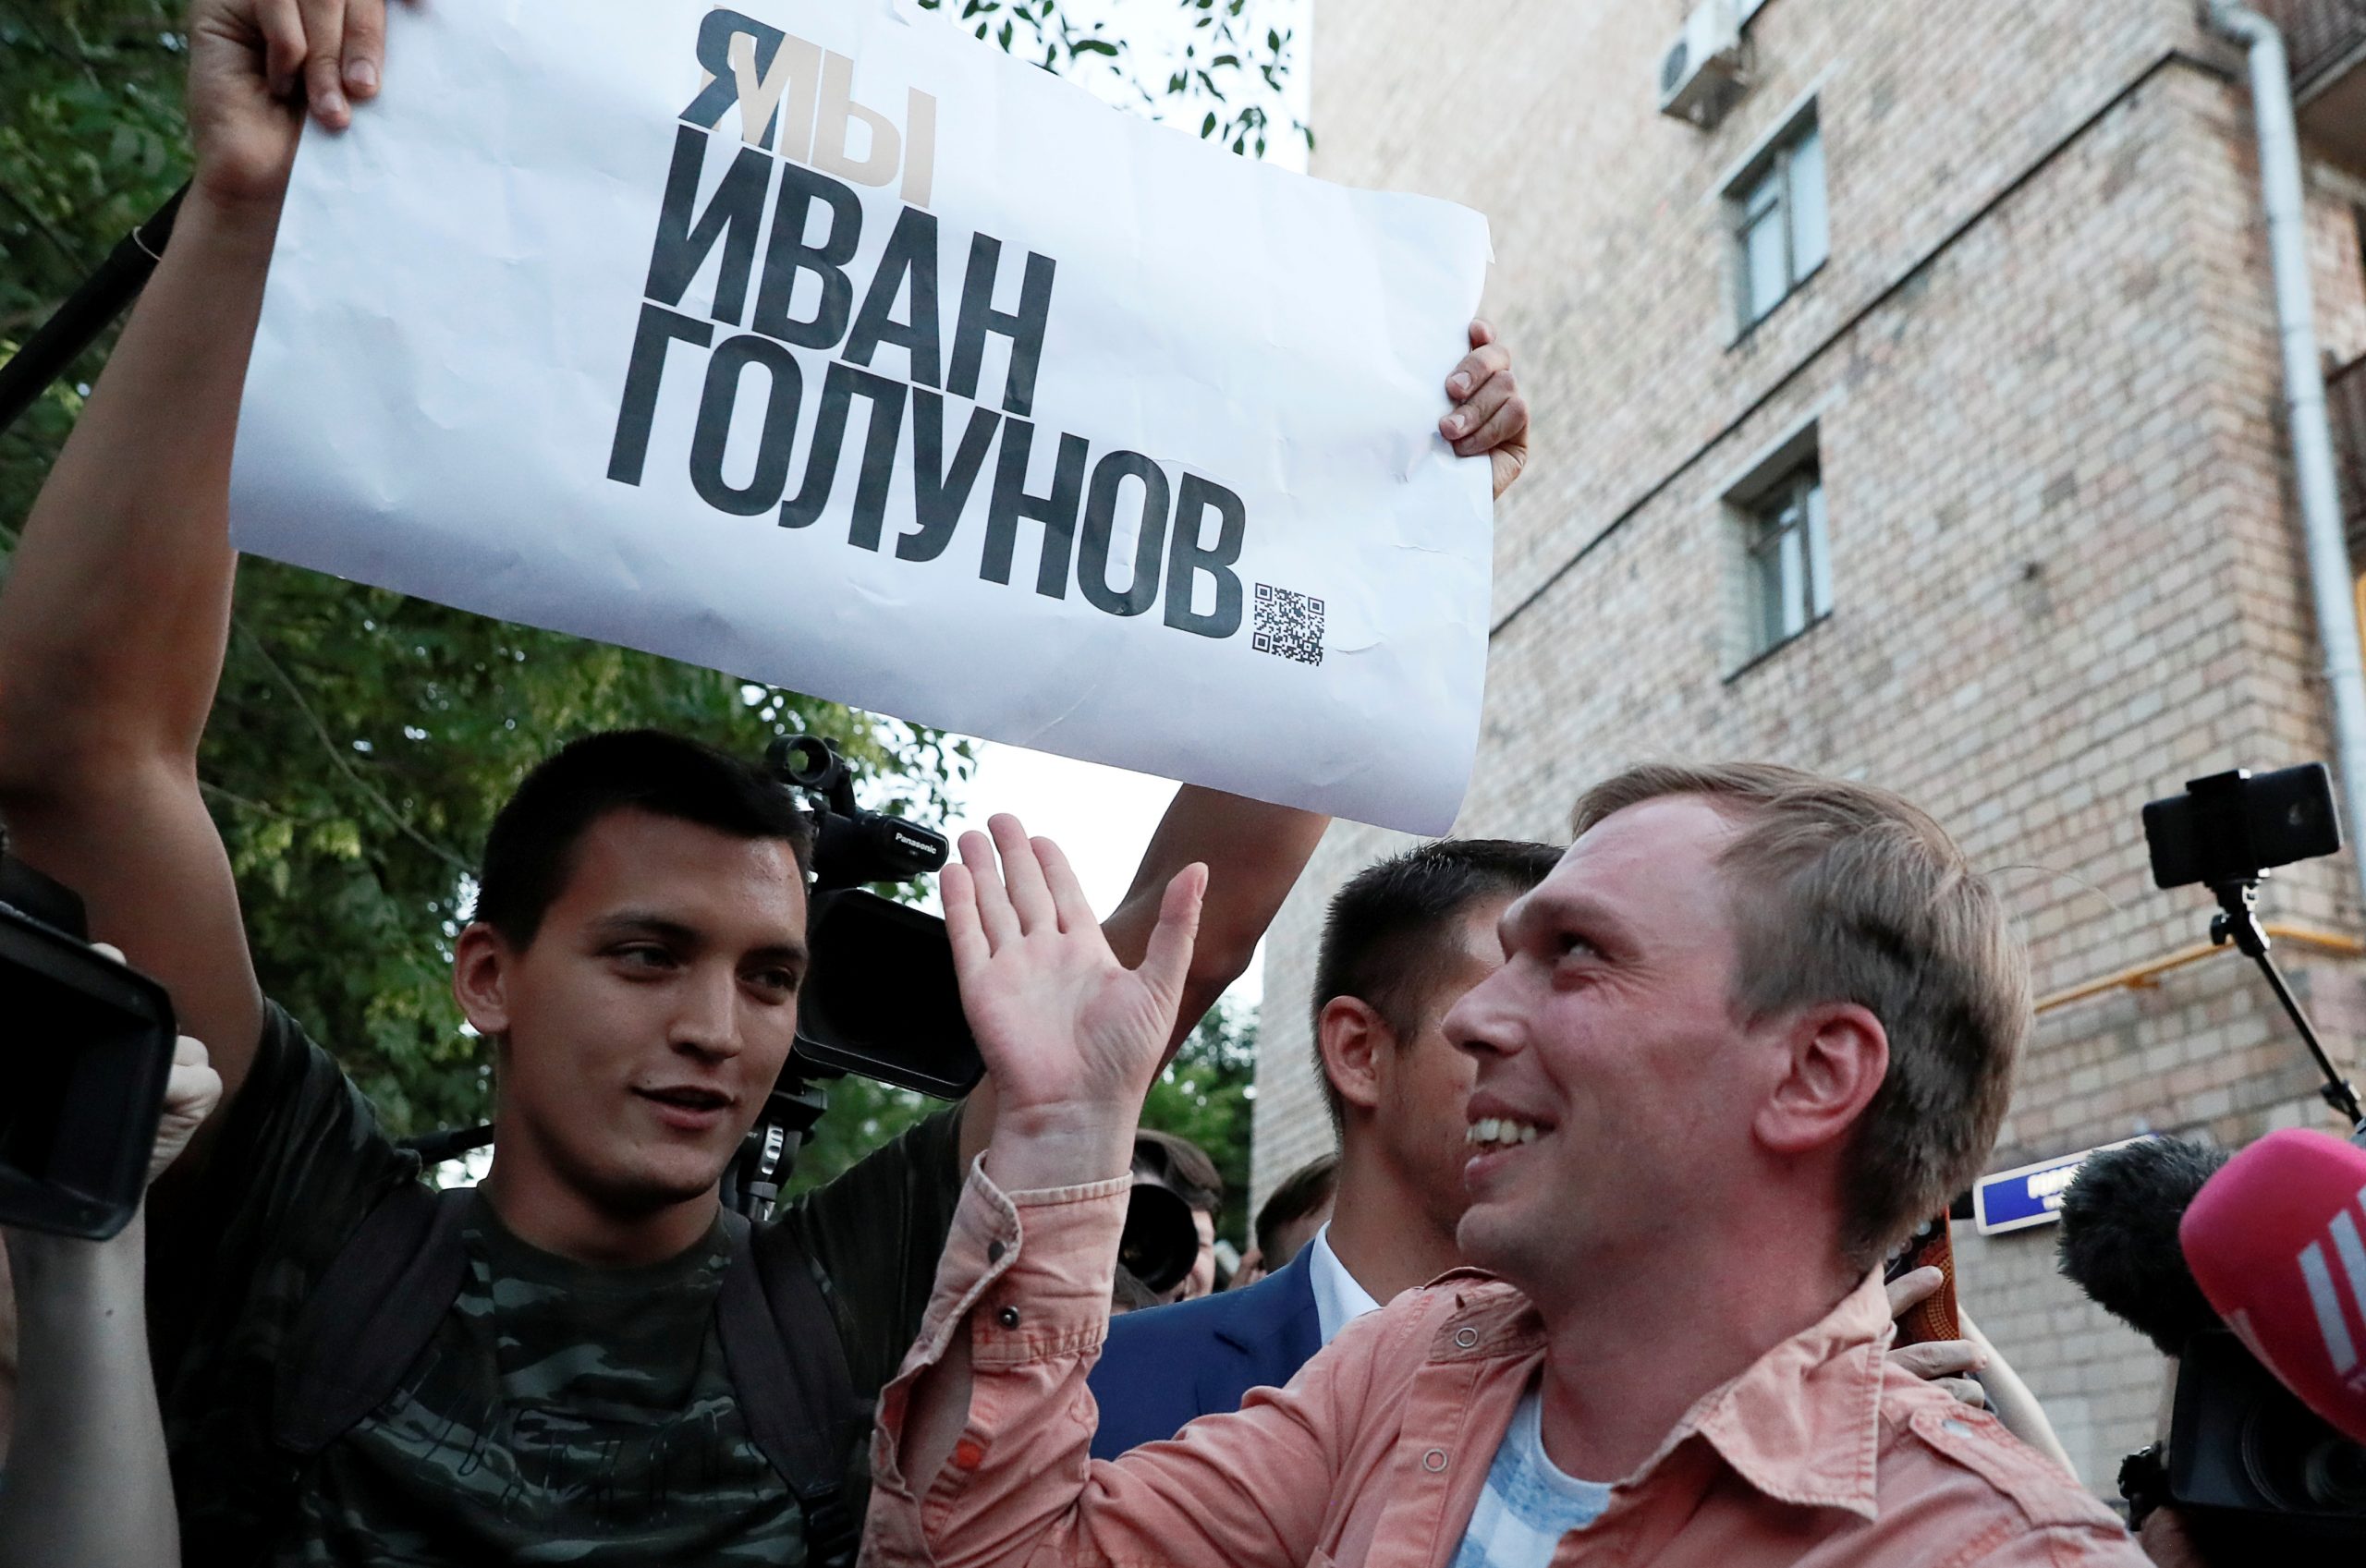 Иван Голунов в июне 2019 года. Фото Shamil Zhumatov/Reuters/Scanpix/Leta